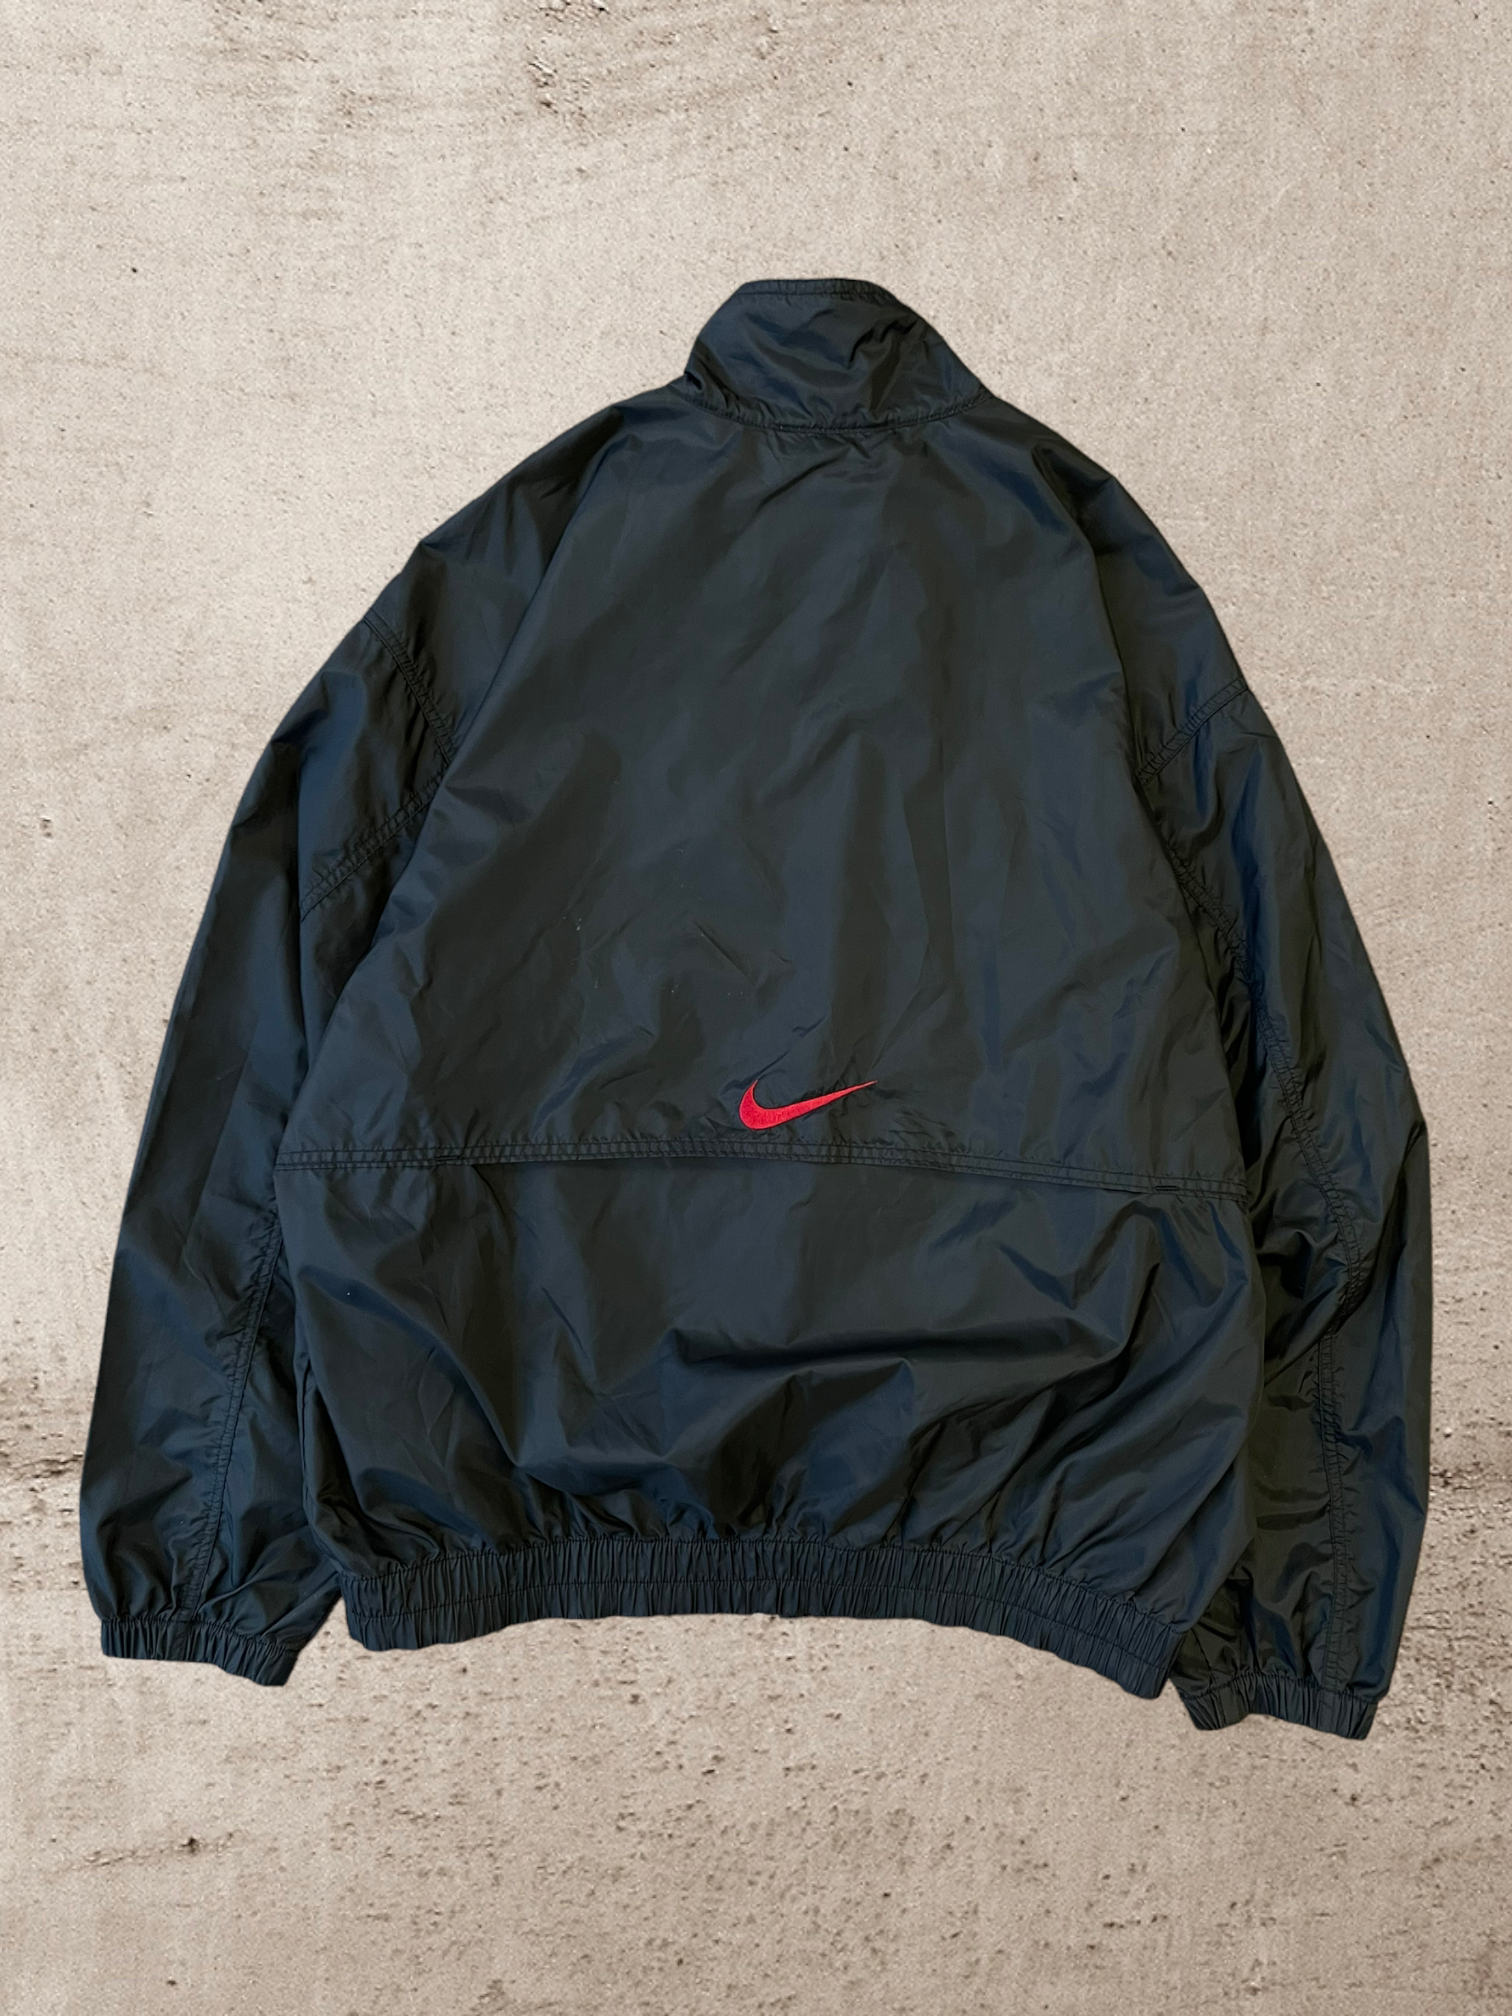 90s Nike Lined Jacket - Large